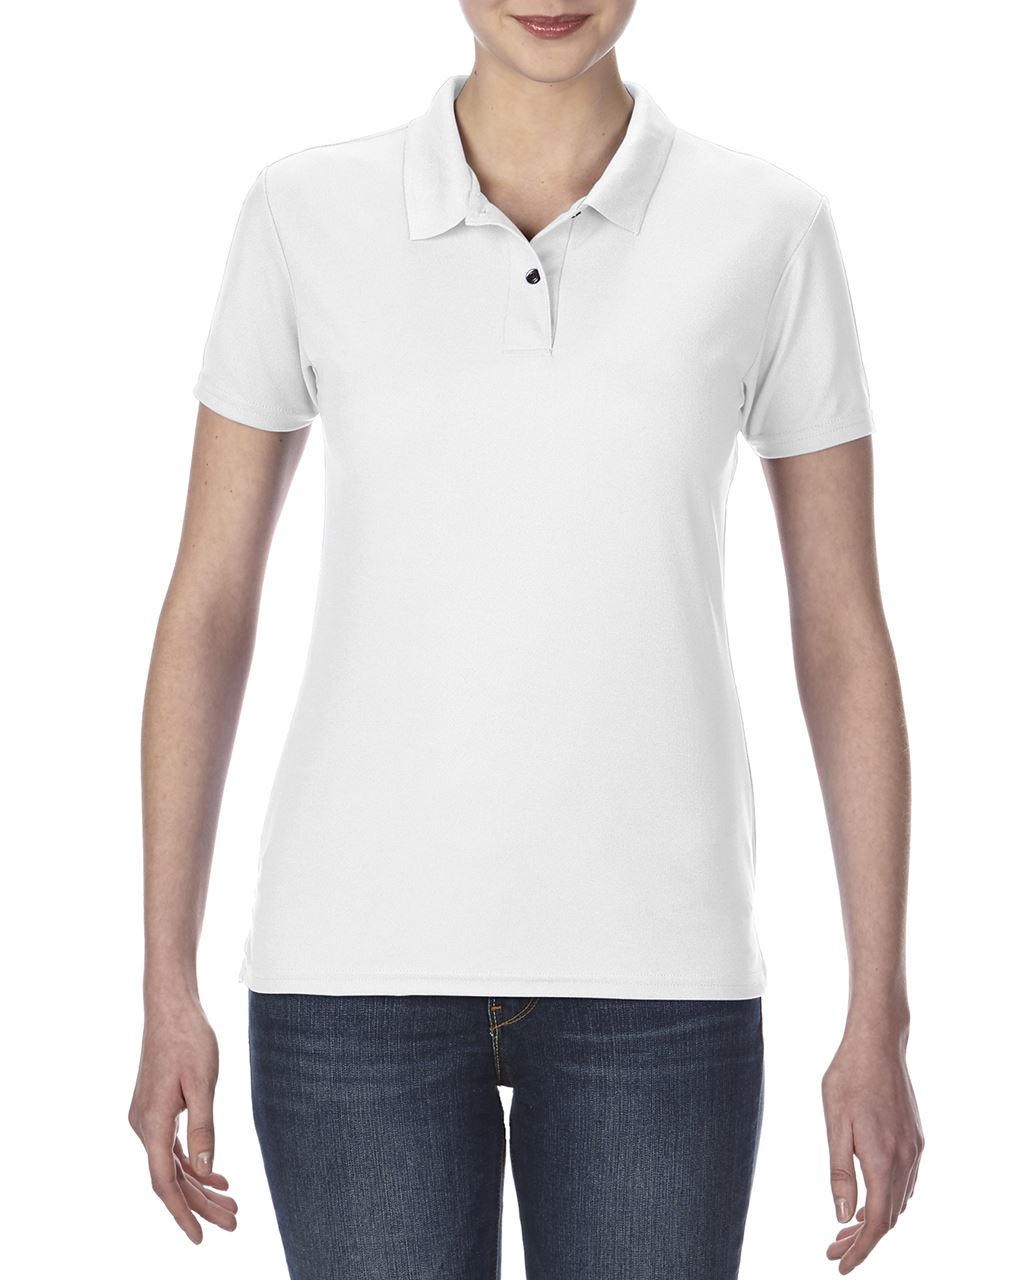 Promo  PERFORMANCE®, ženska polo majica s kratkim rukavima